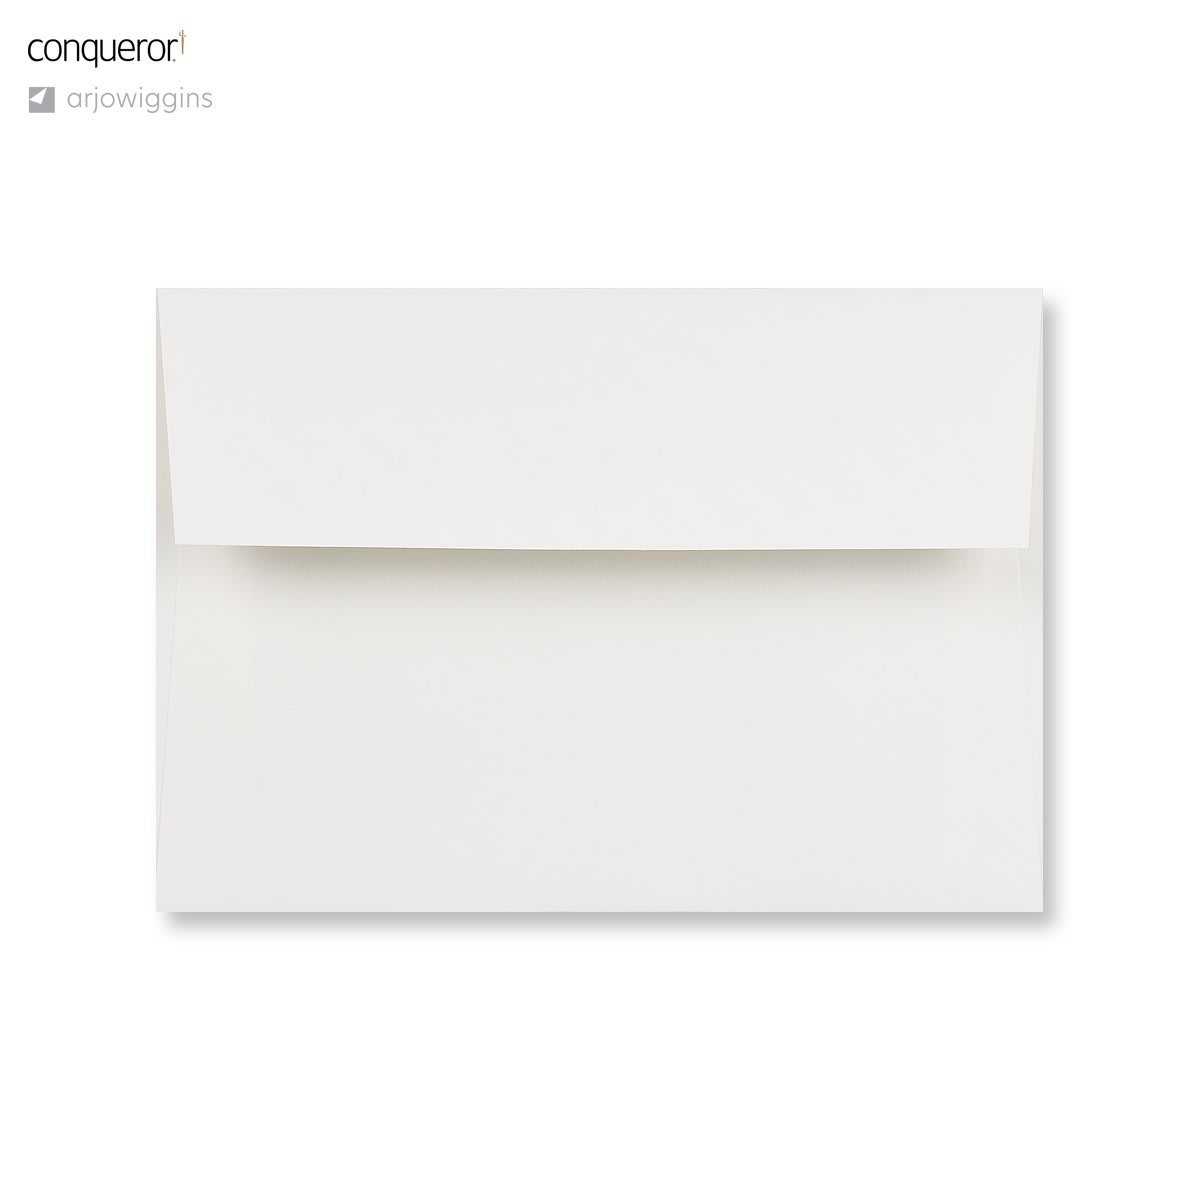 4.49 x 6.38 " High White Conqueror 4.49 x 6.38 " Wove Wallet Peel & Seal 80lb Envelopes